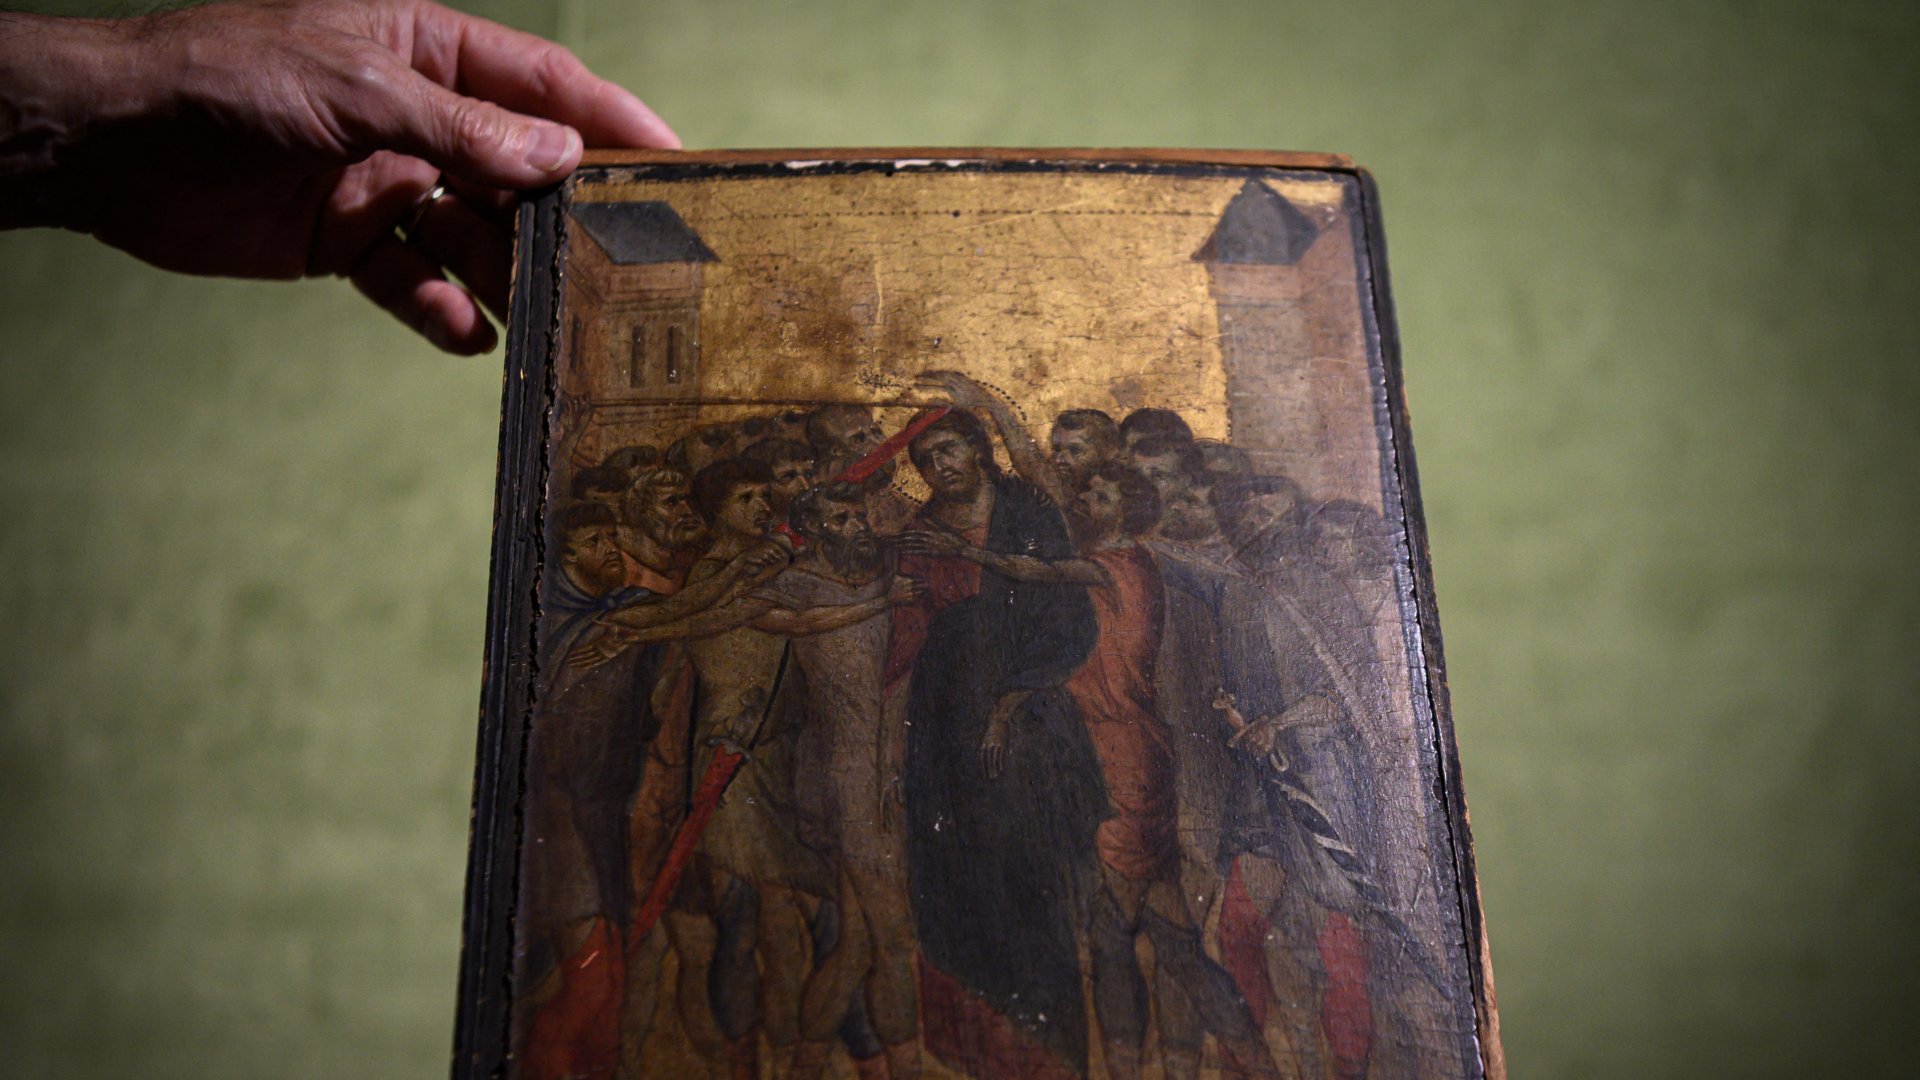 A 2019. szeptember 23-án Párizsban készült képen a 13. század végi firenzei művész, Cenni di Pepo, más néven Cimabue "Krisztus kigúnyolása" című festménye látható